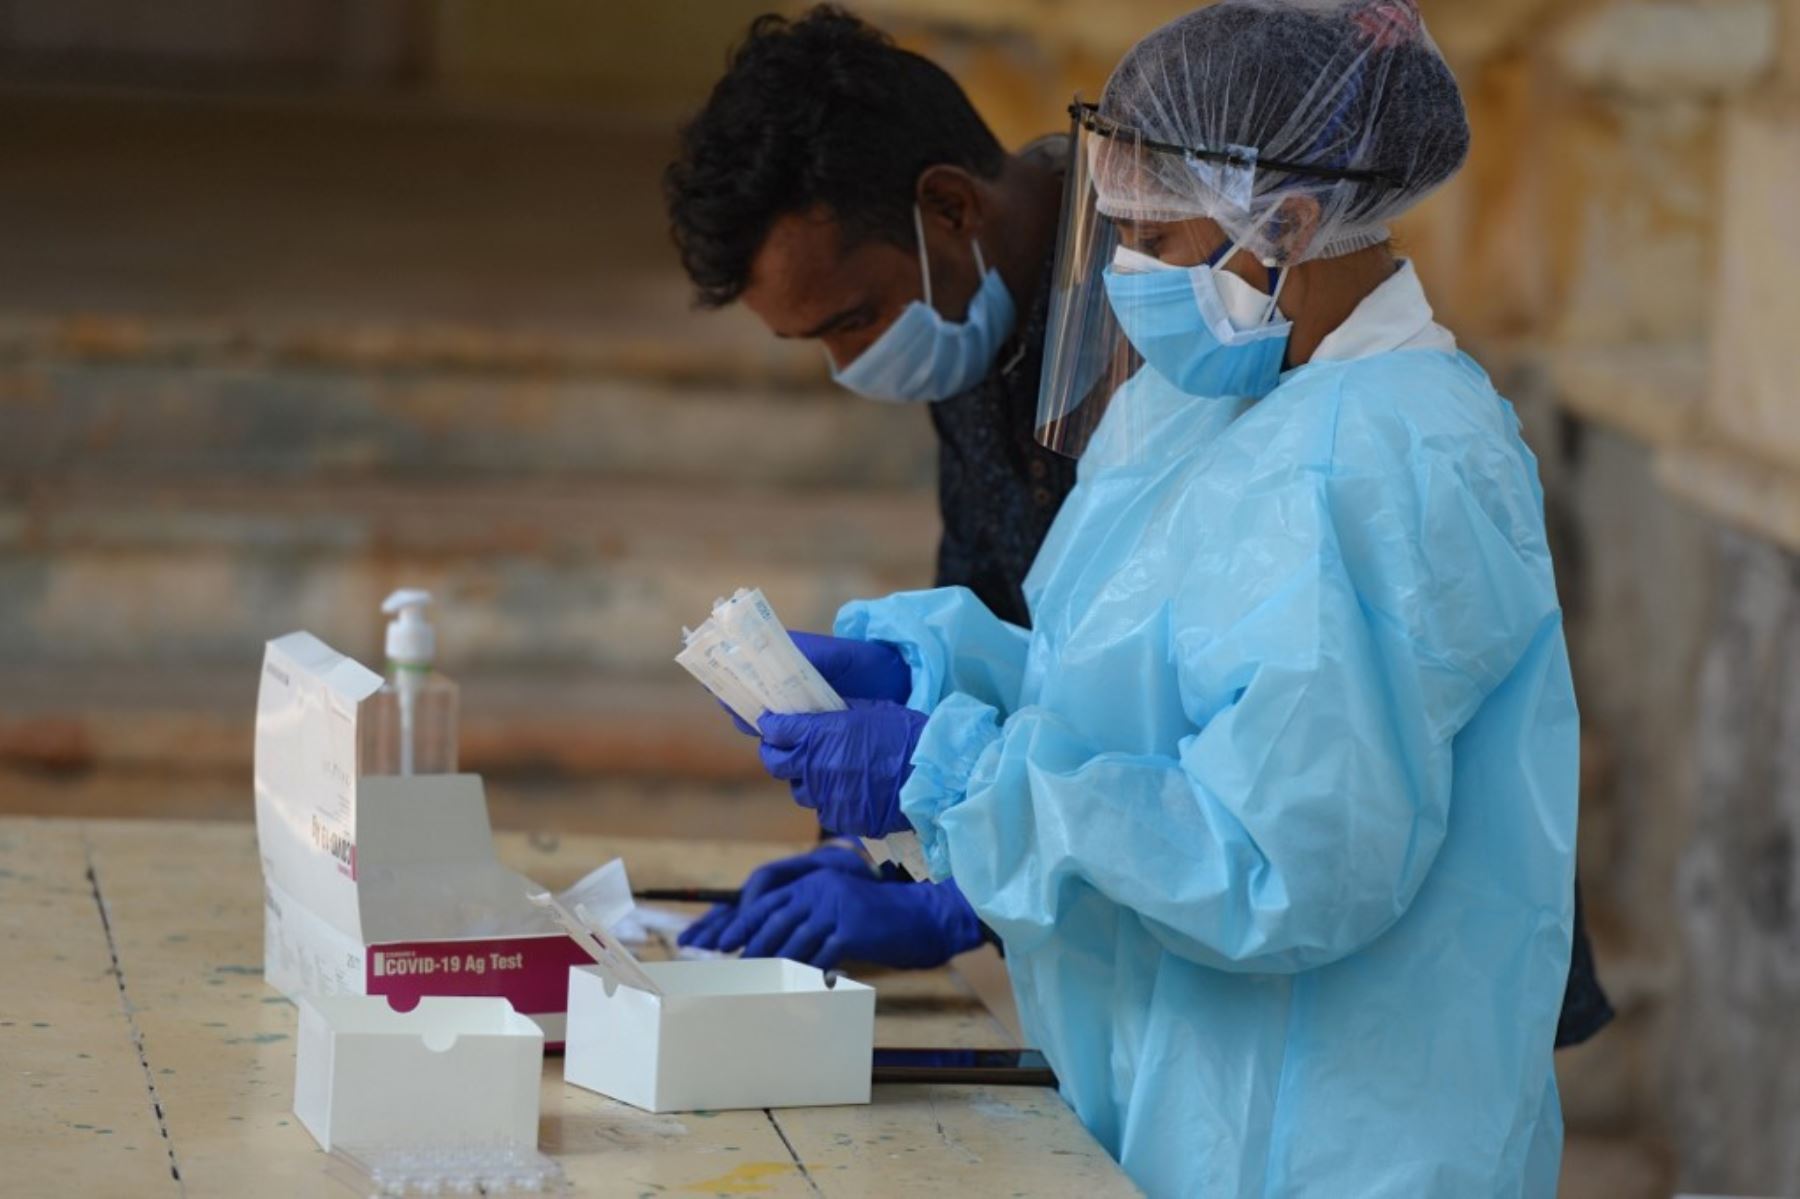 Trabajadores de la salud se preparan para recolectar muestras de hisopos de los residentes para realizar la prueba del covid-19 en el centro de recolección de muestras en Hyderabad.Foto:AFP